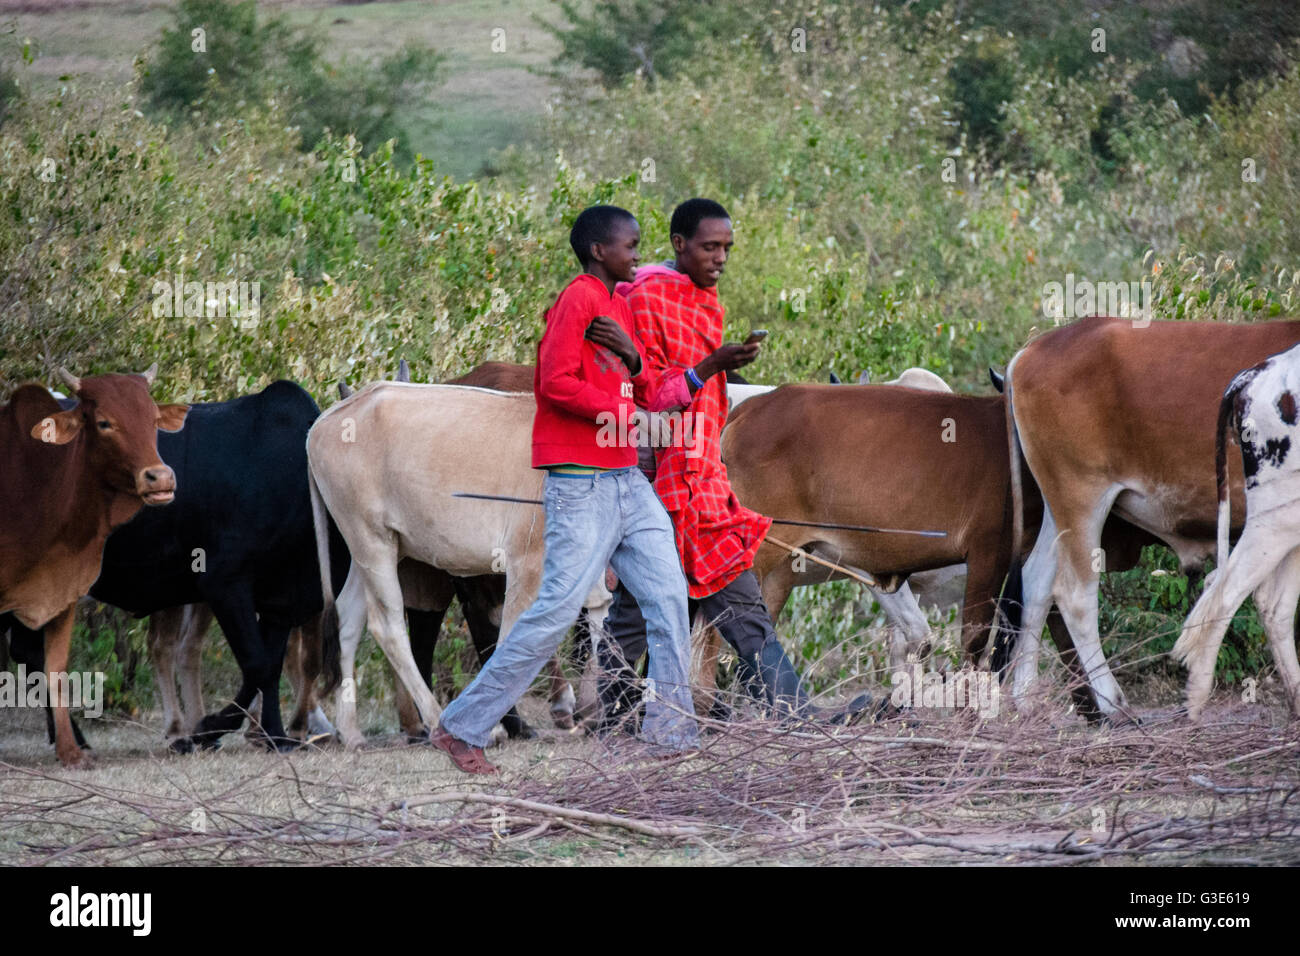 Masai man checks his cell phone while herding cattle in a village near the Masai Mara, Kenya, East Africa Stock Photo